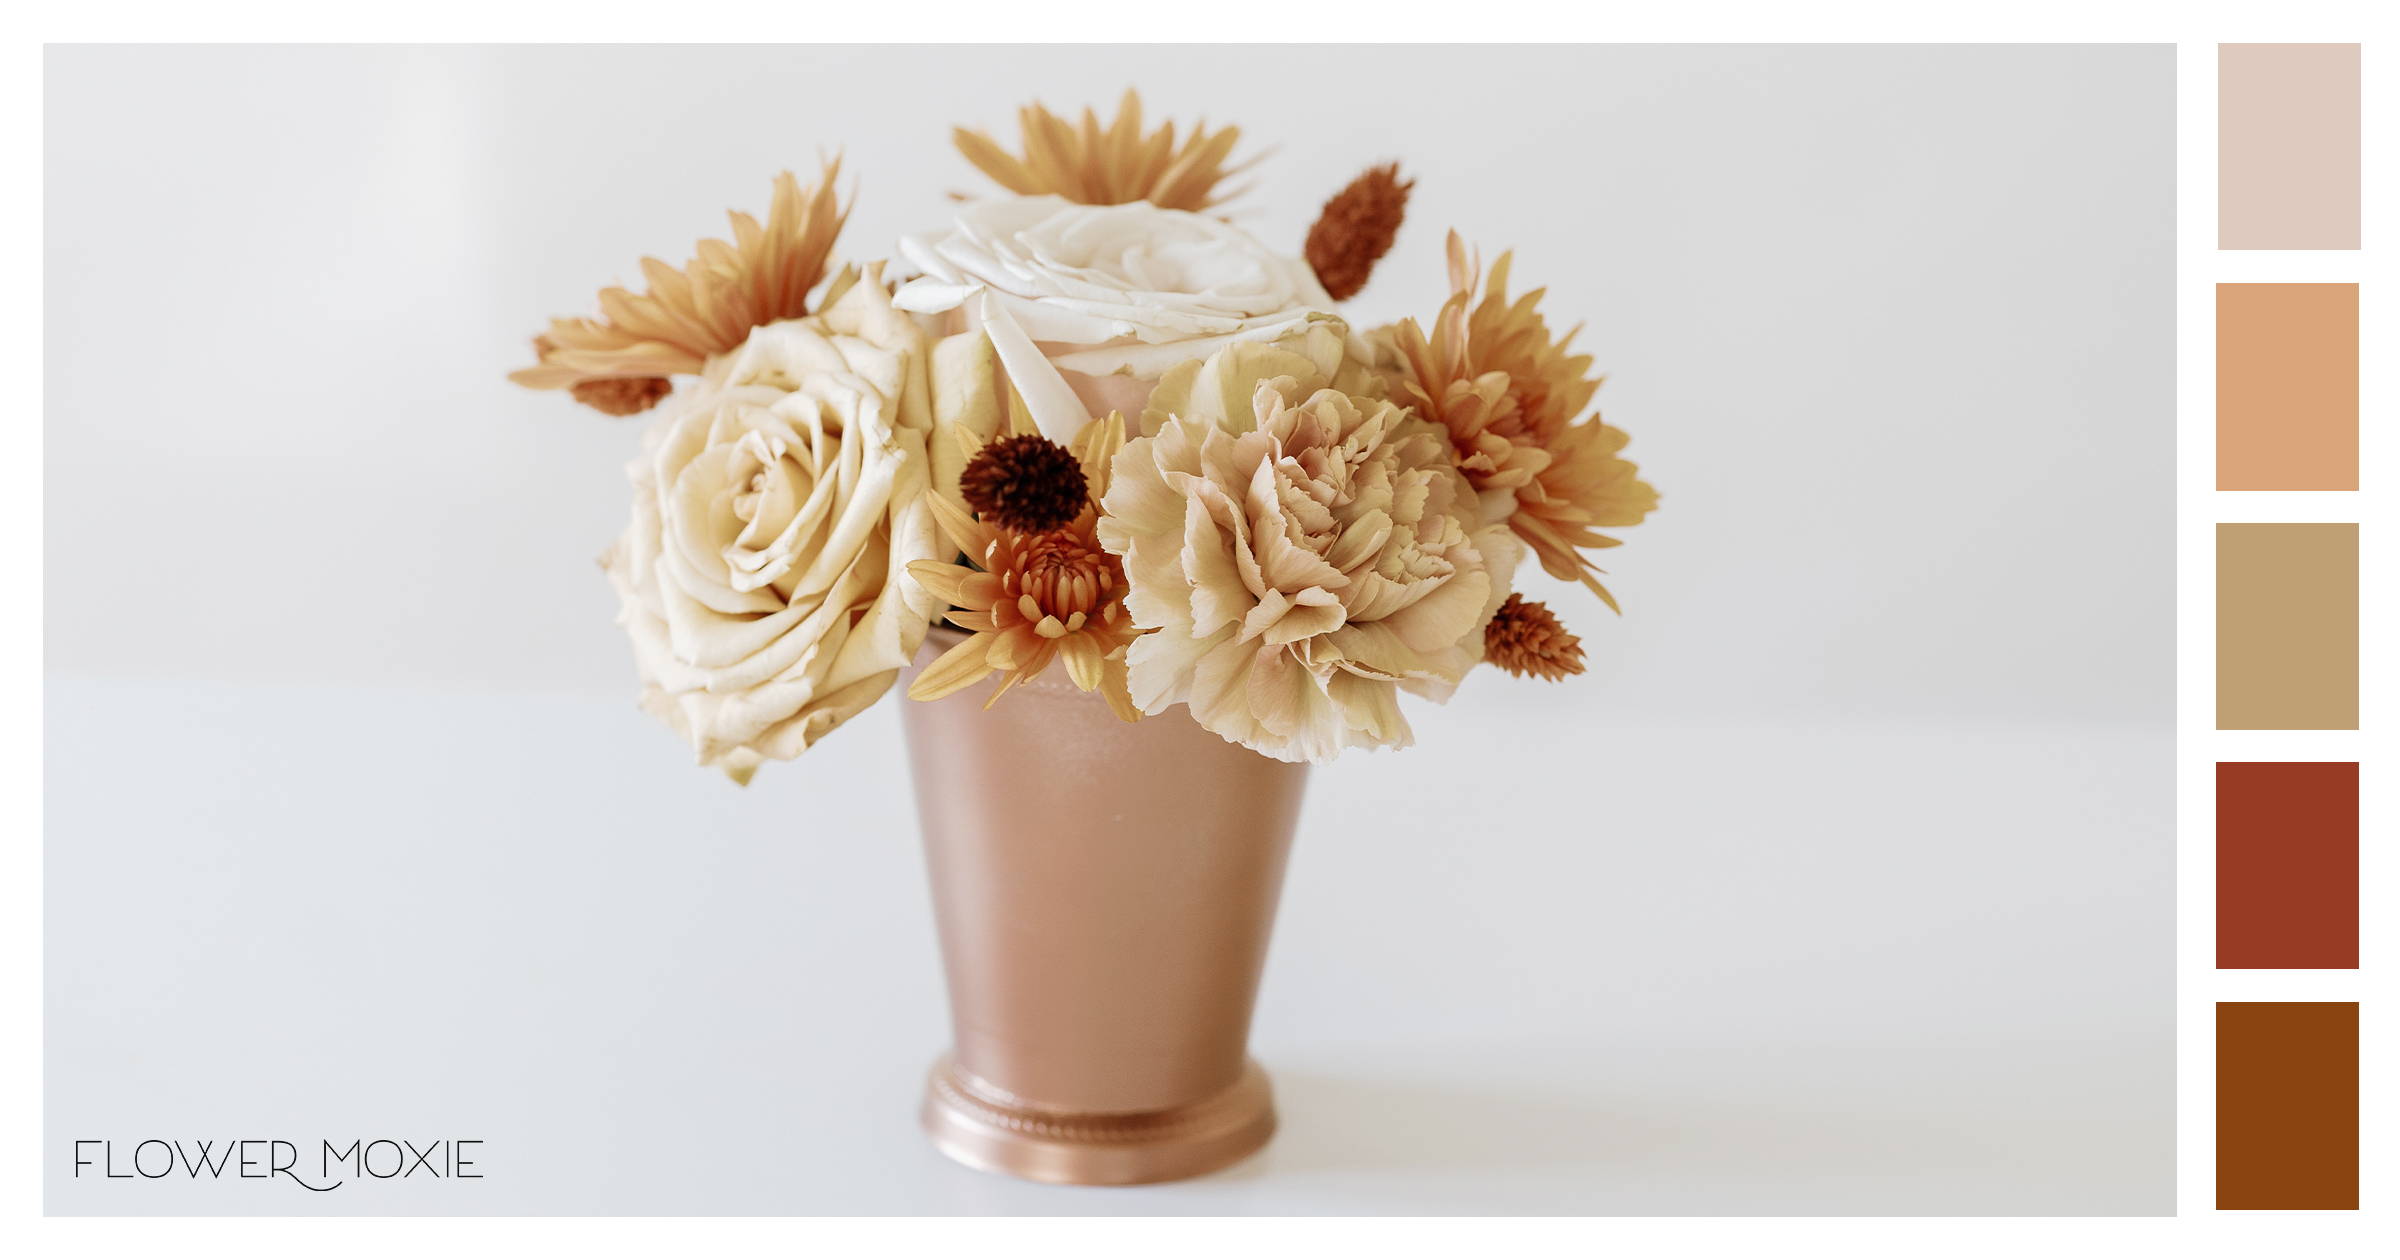 terracotta wedding flower packages diy